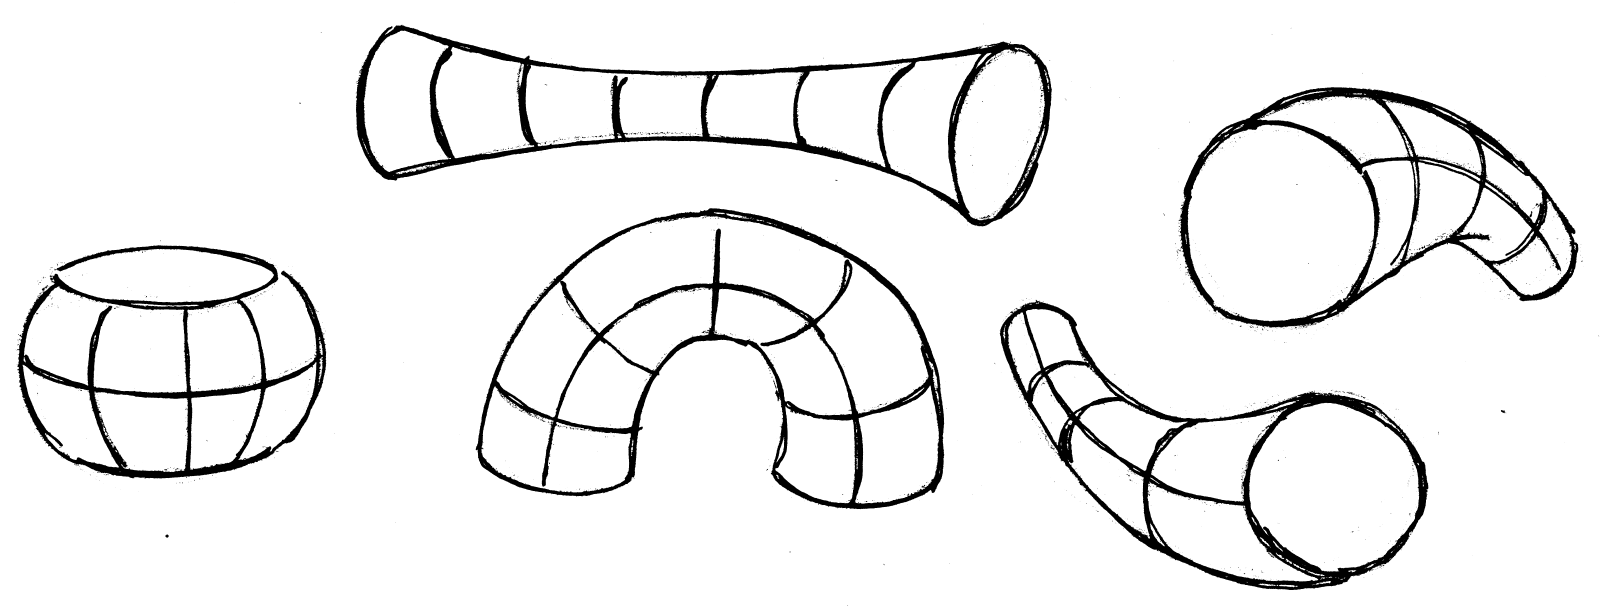 image of deformed cylinders